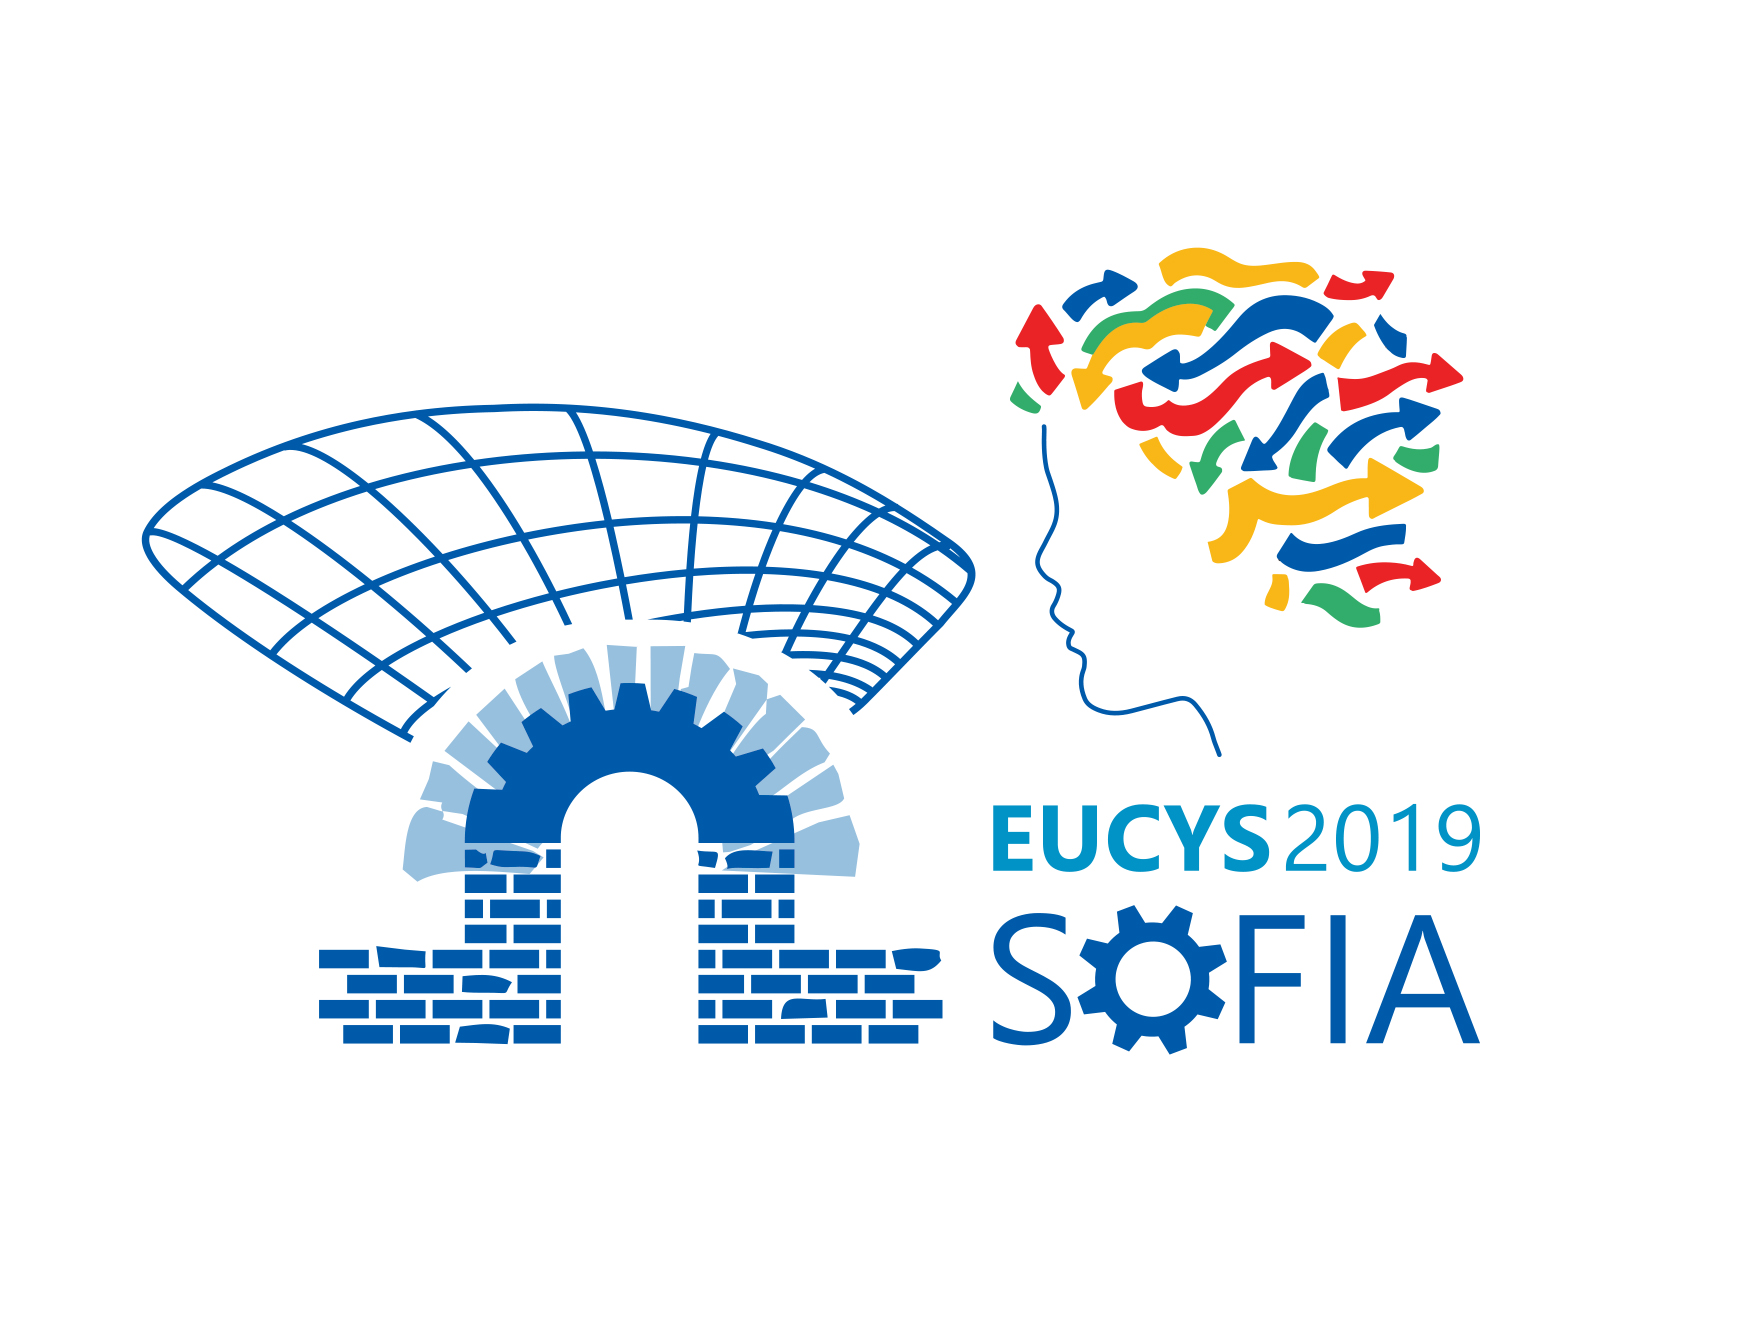 EUCYS2019 Sofia Logo